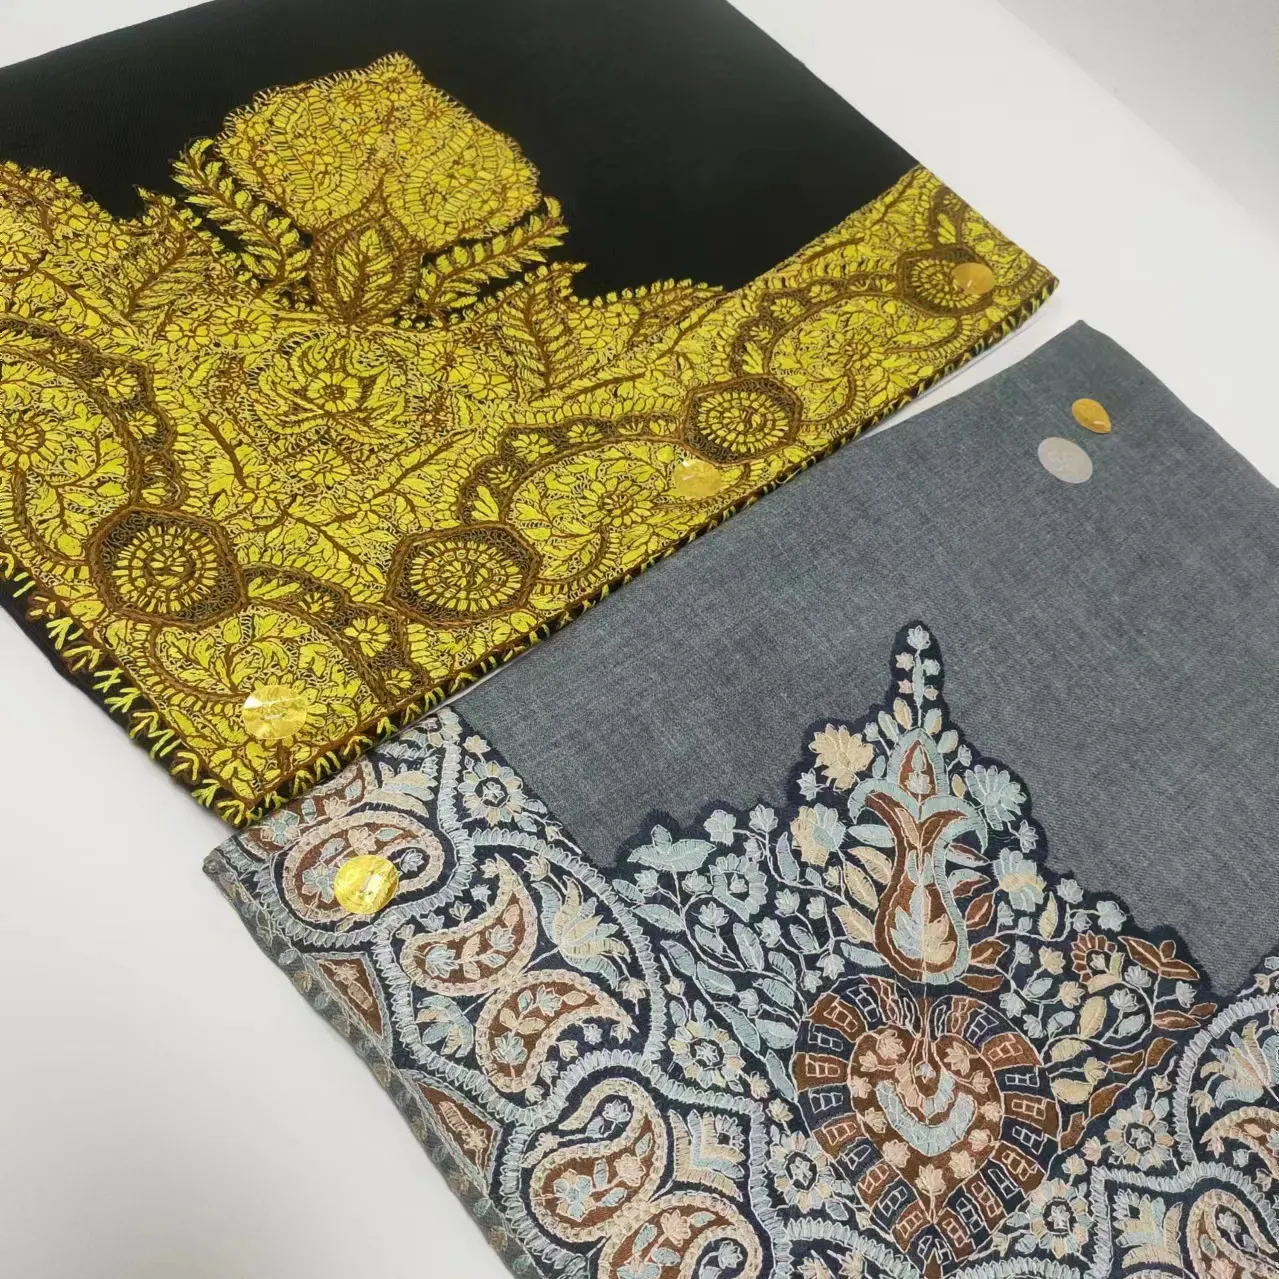 Arab Shawl Muslim Shemagh Headscarf Islamic Scarf Men's keffiyeh hijab Scarf Gift big Embroidered hijab kashmir 55x55inch